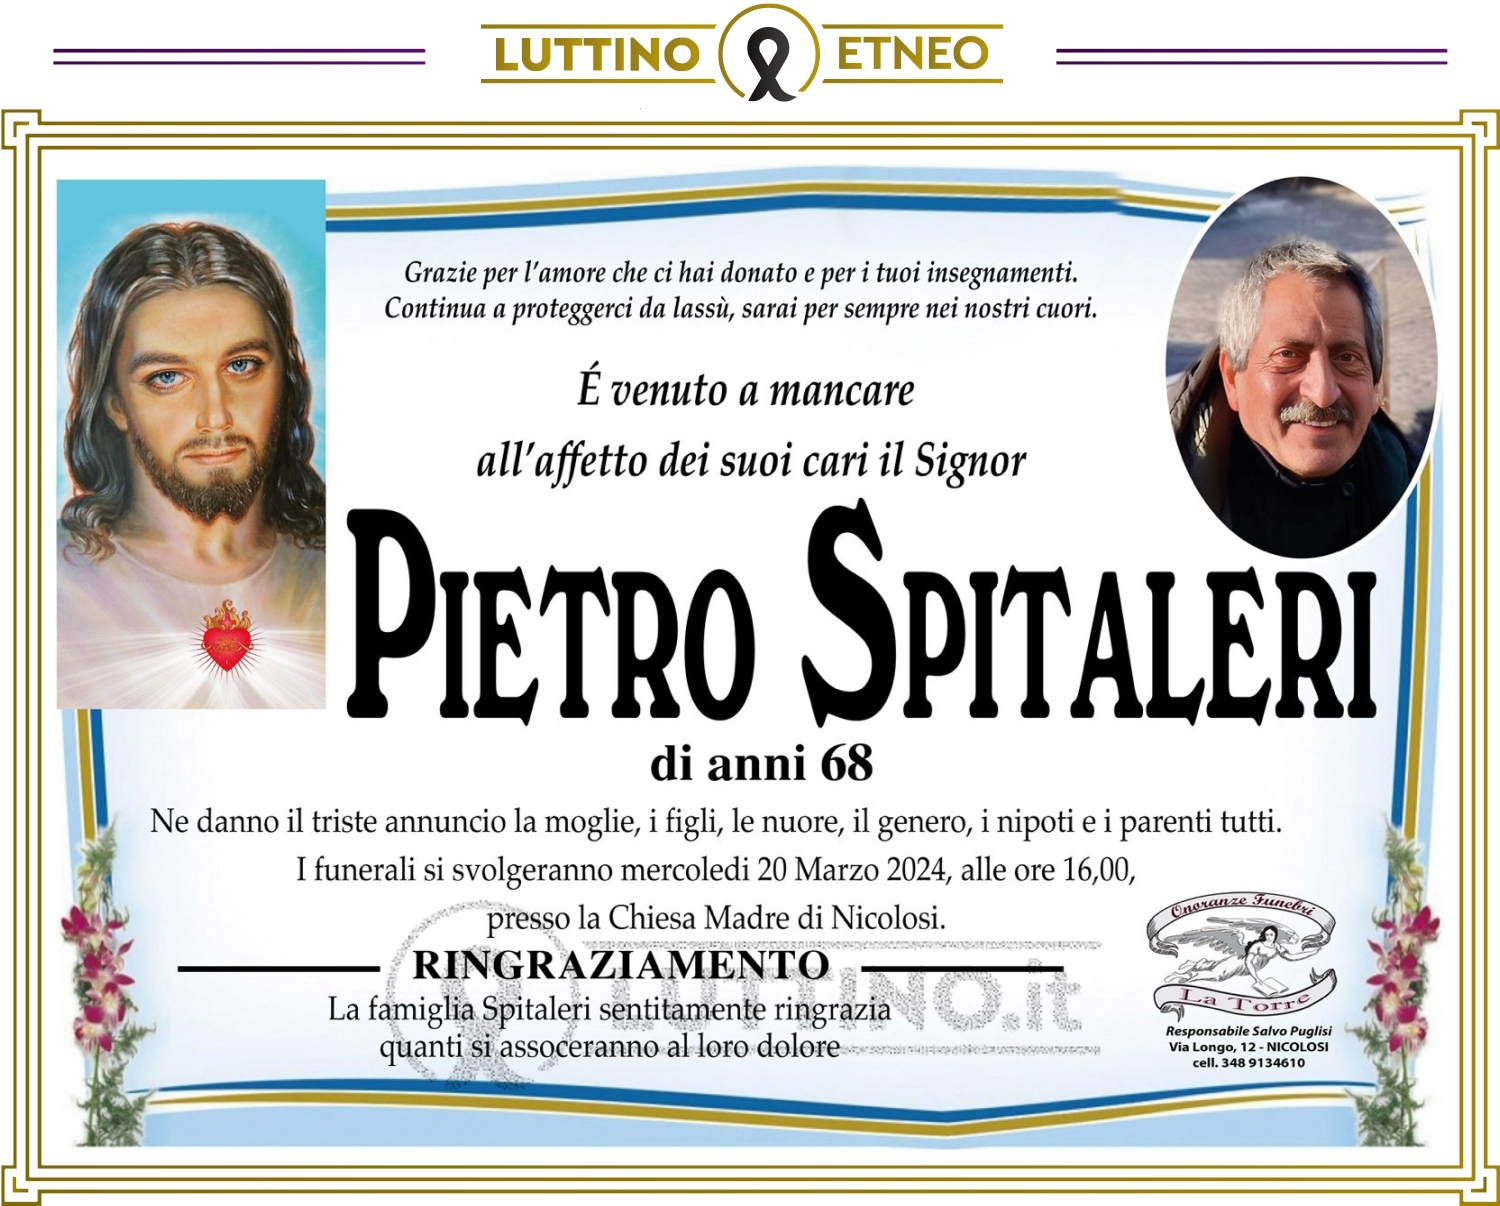 Pietro Spitaleri